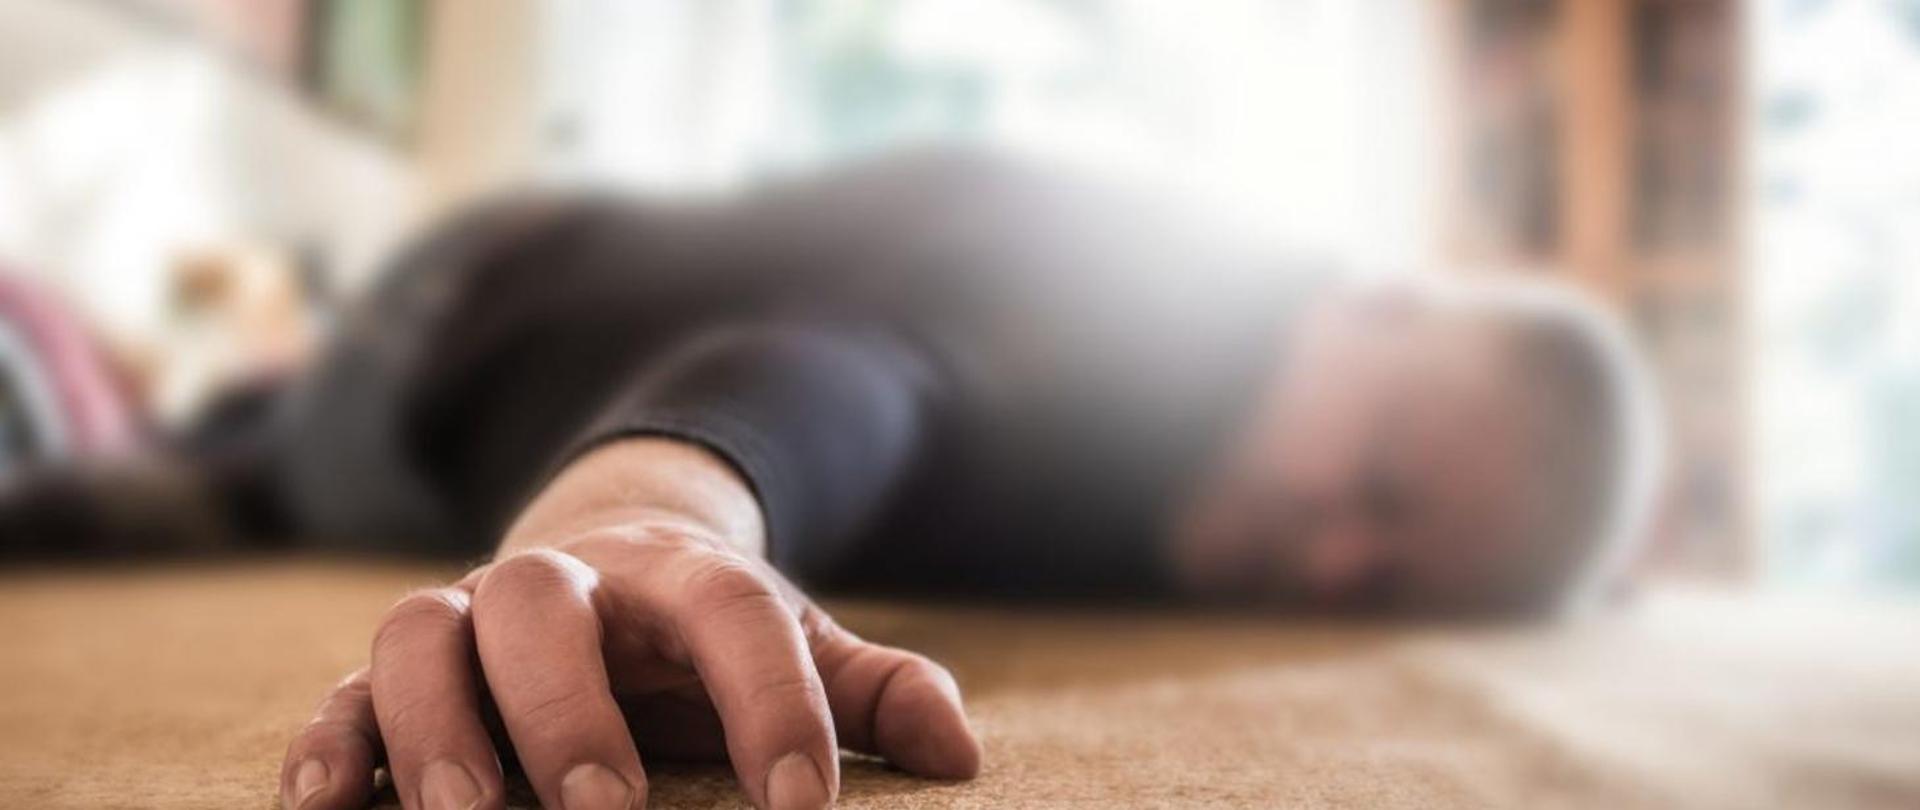 Człowiek - mężczyzna leżący na podłodze, z przodu zdjęcia leżąca jego dłoń